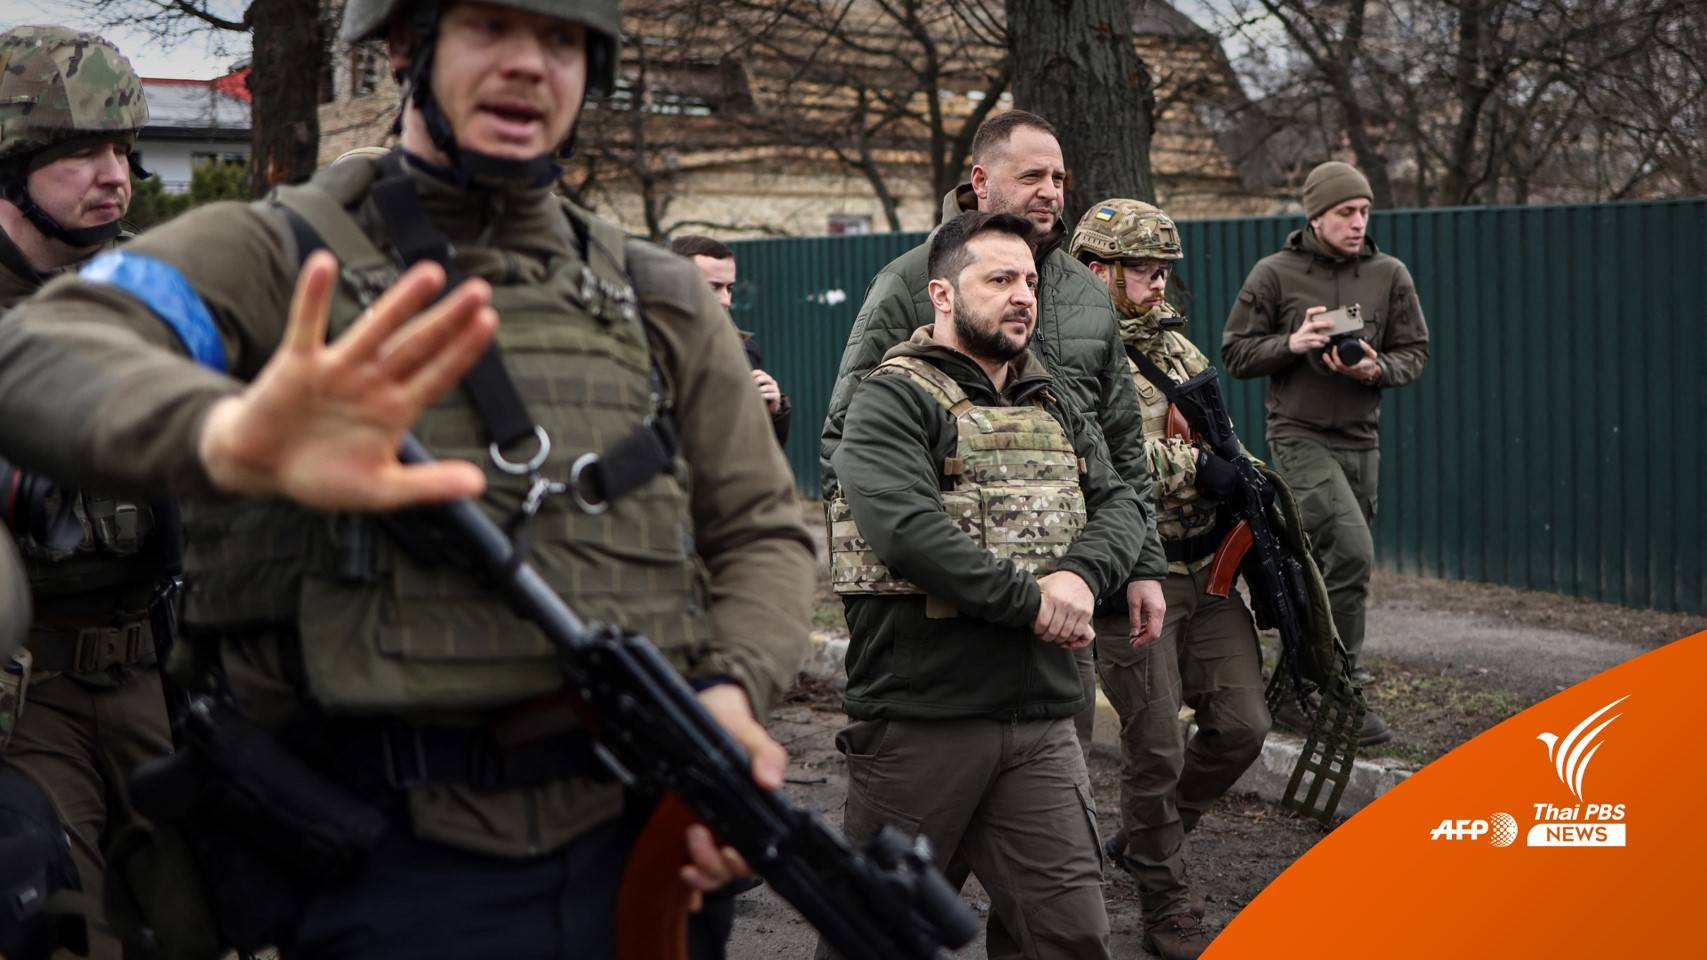 ผู้นำยูเครนชี้เหตุสังหารหมู่ ขวางเจรจาสันติภาพ 